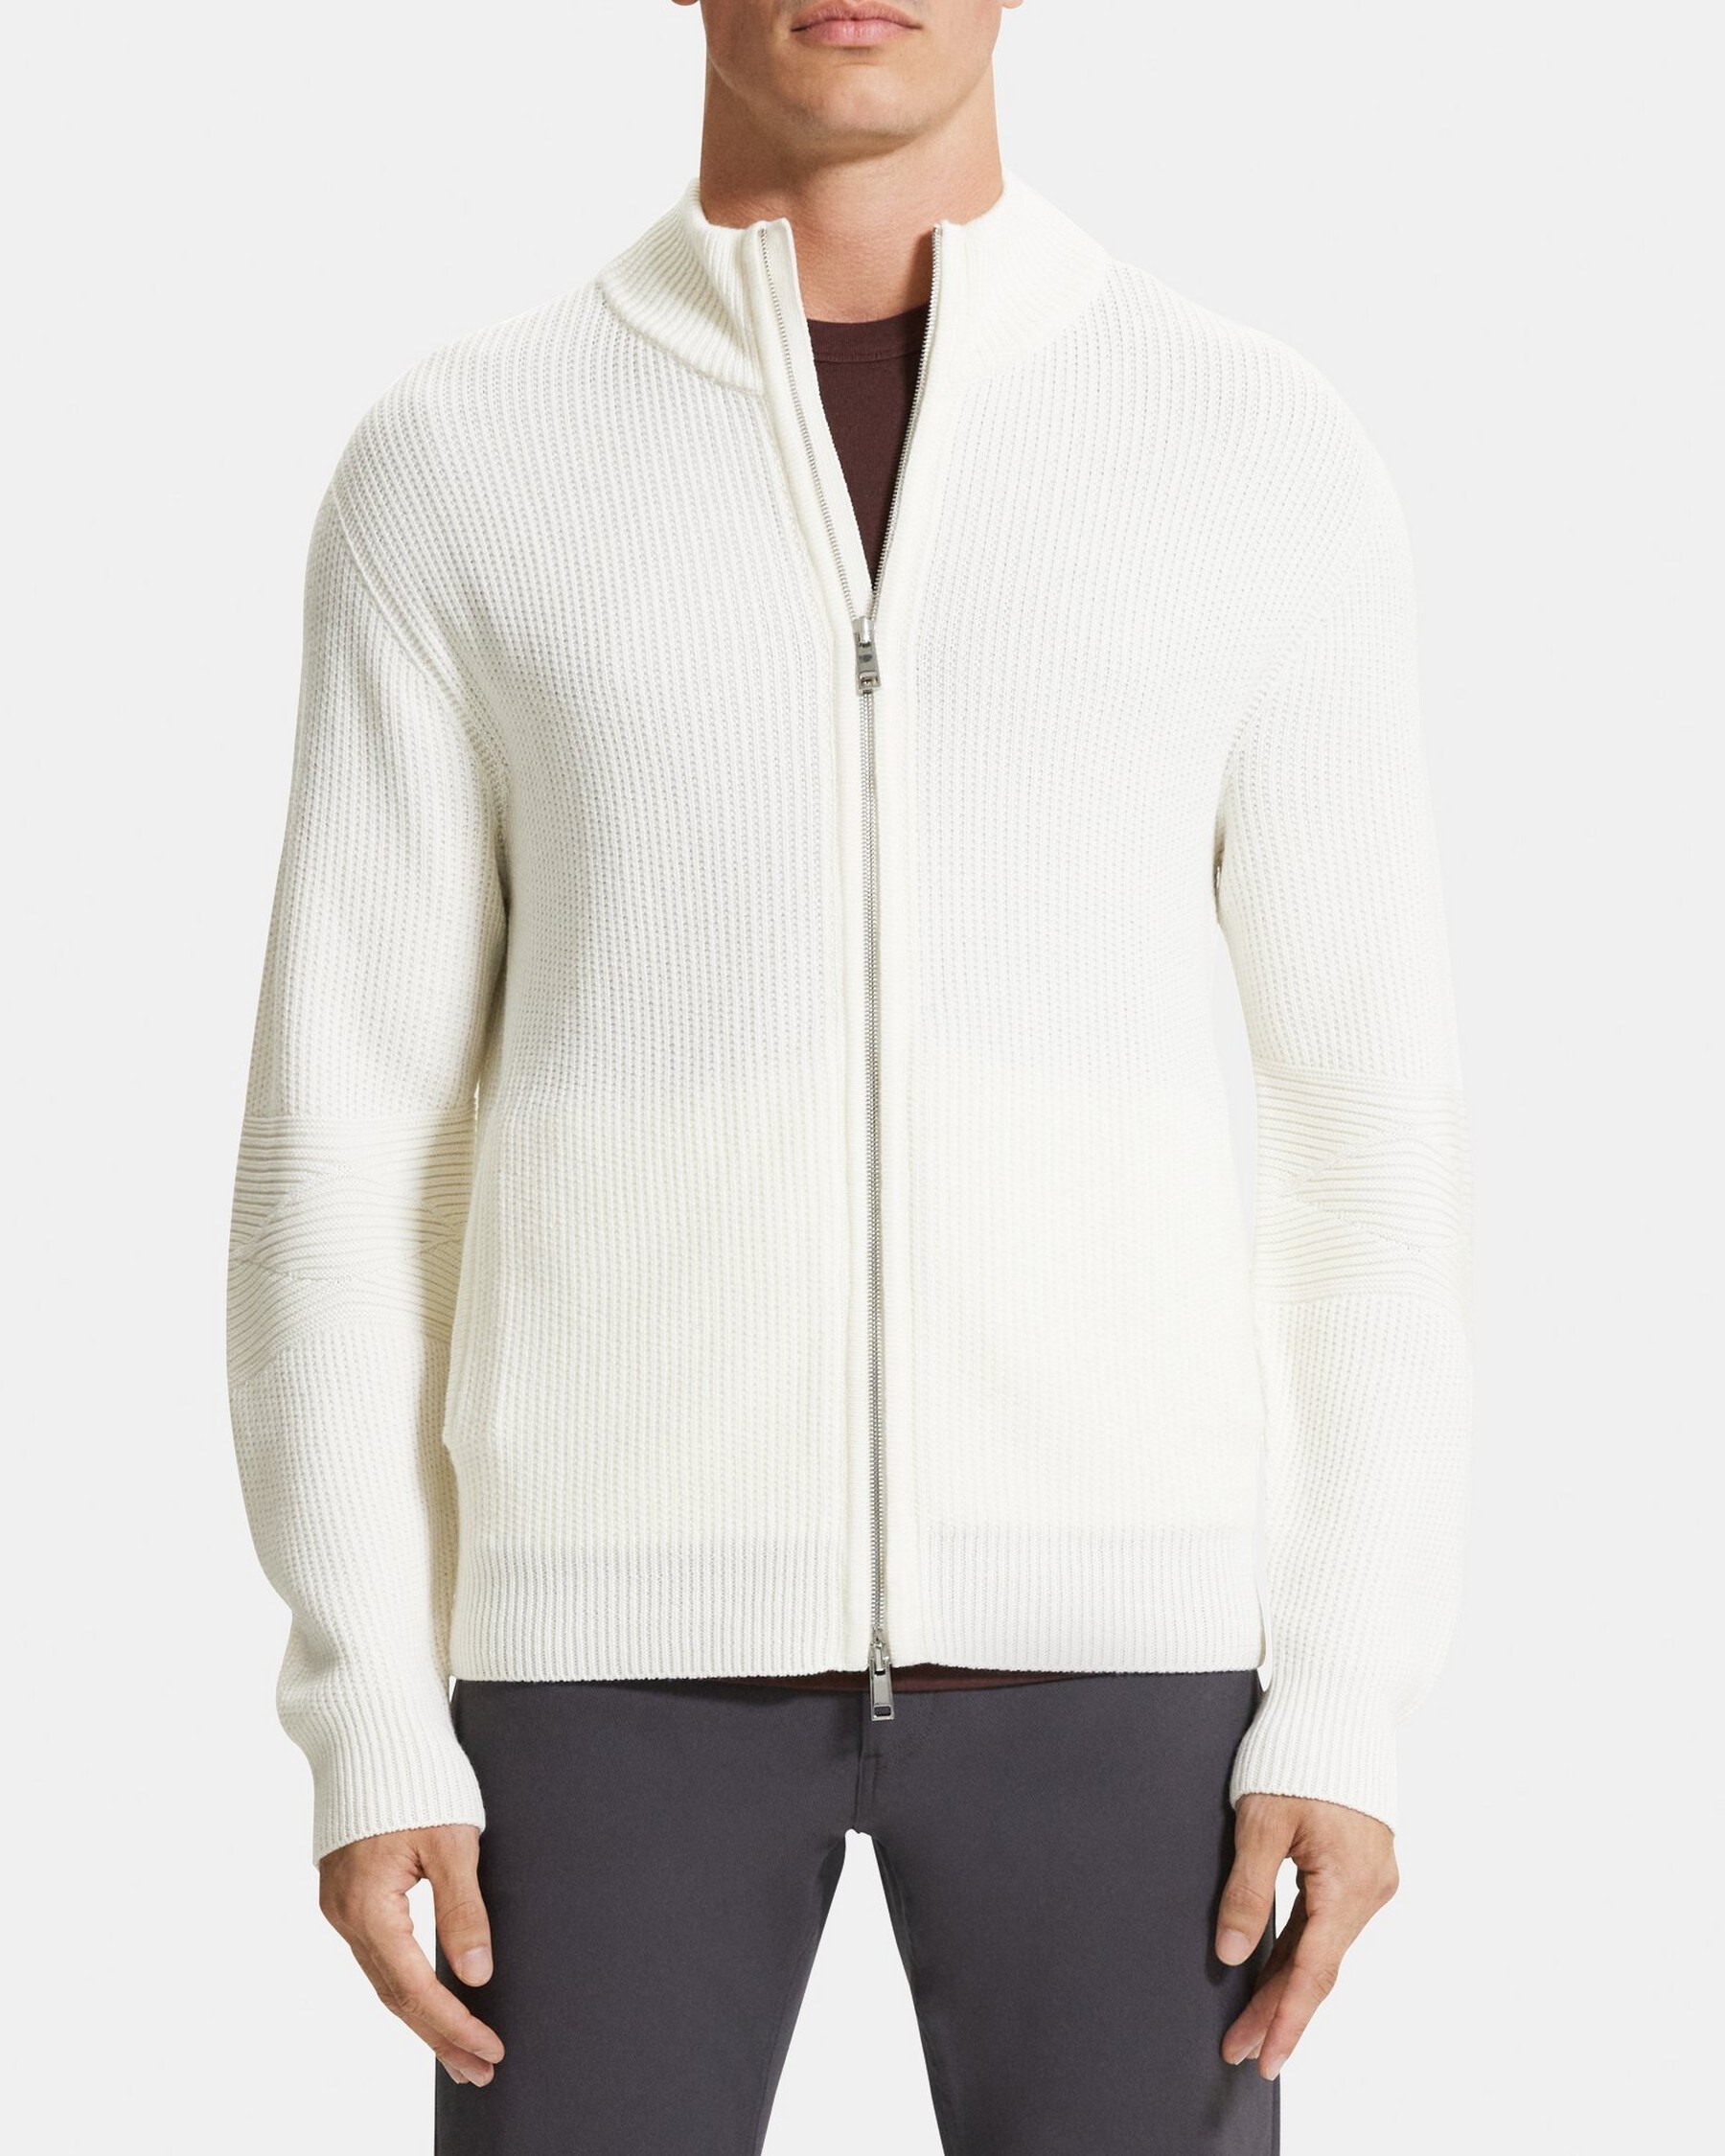 띠어리 Theory Full-Zip Cardigan in Merino Wool,WHITE